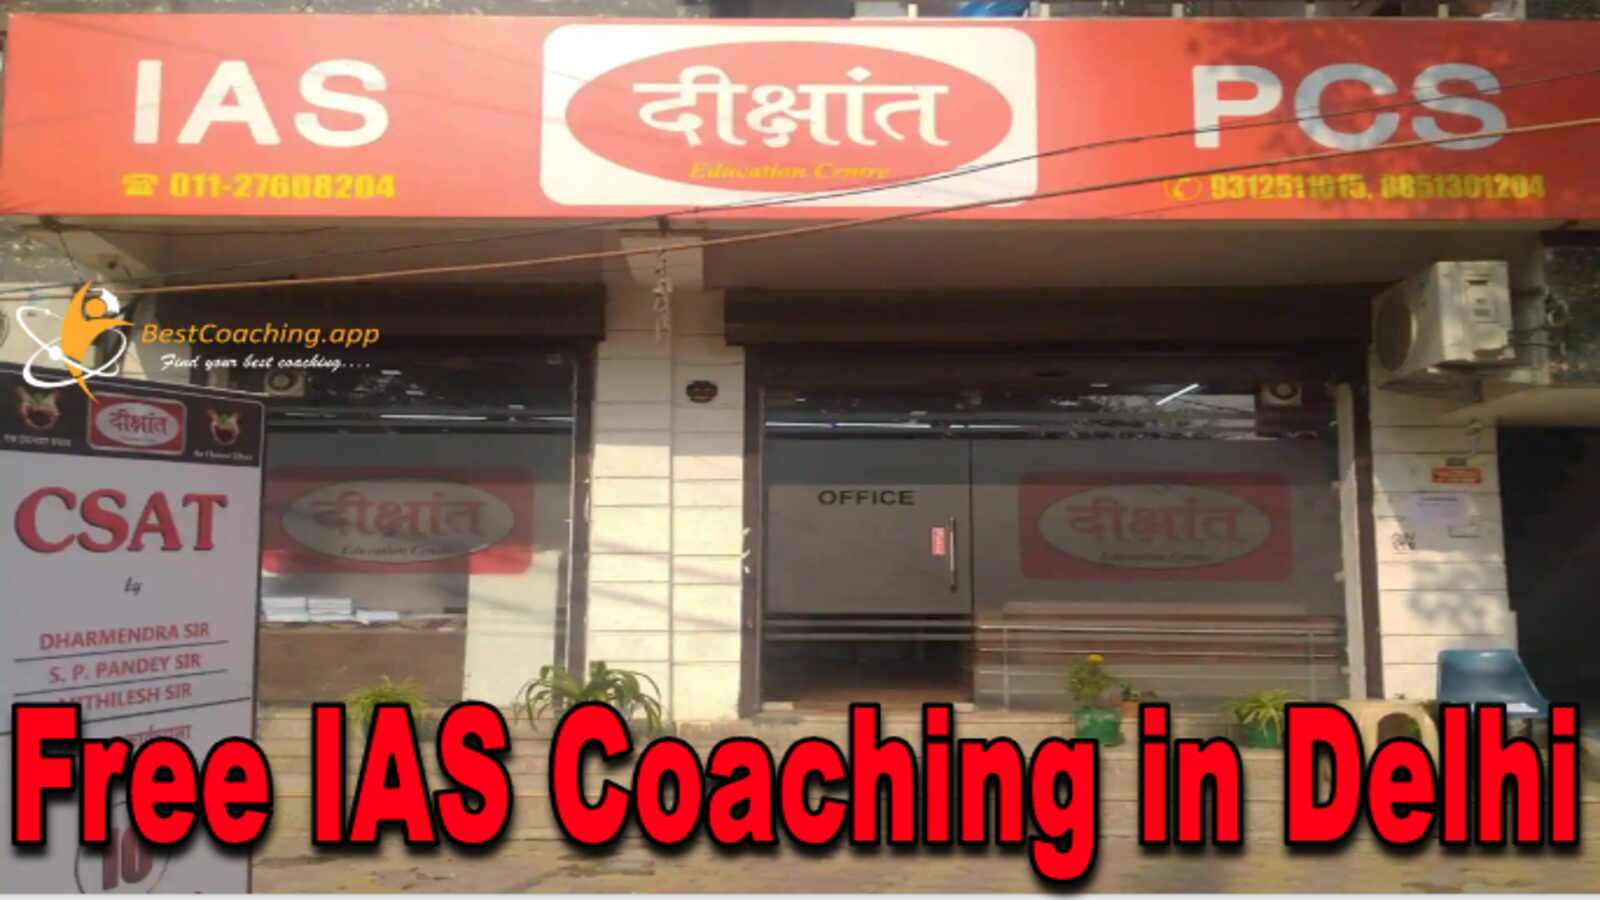 Dikshant IAS free IAS Coaching in Delhi